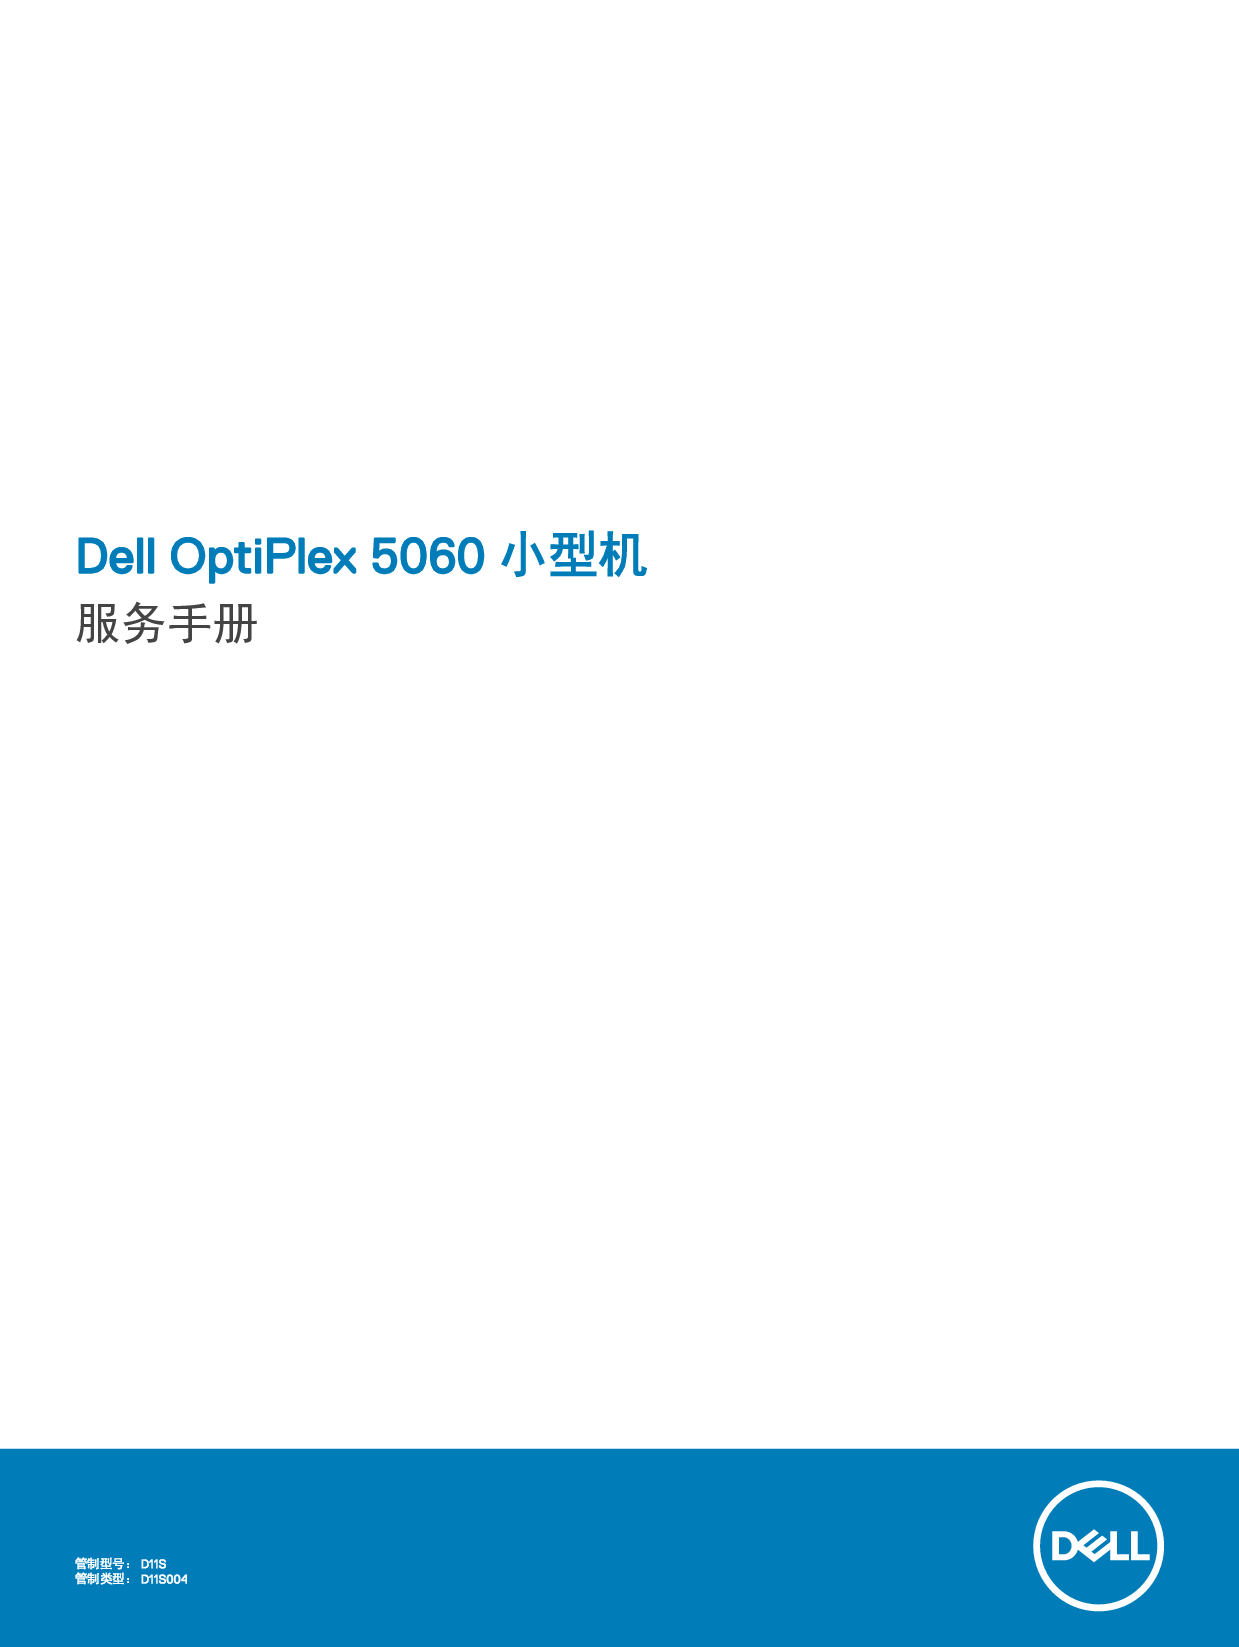 戴尔 Dell Optiplex 5060 小型 维修服务手册 封面